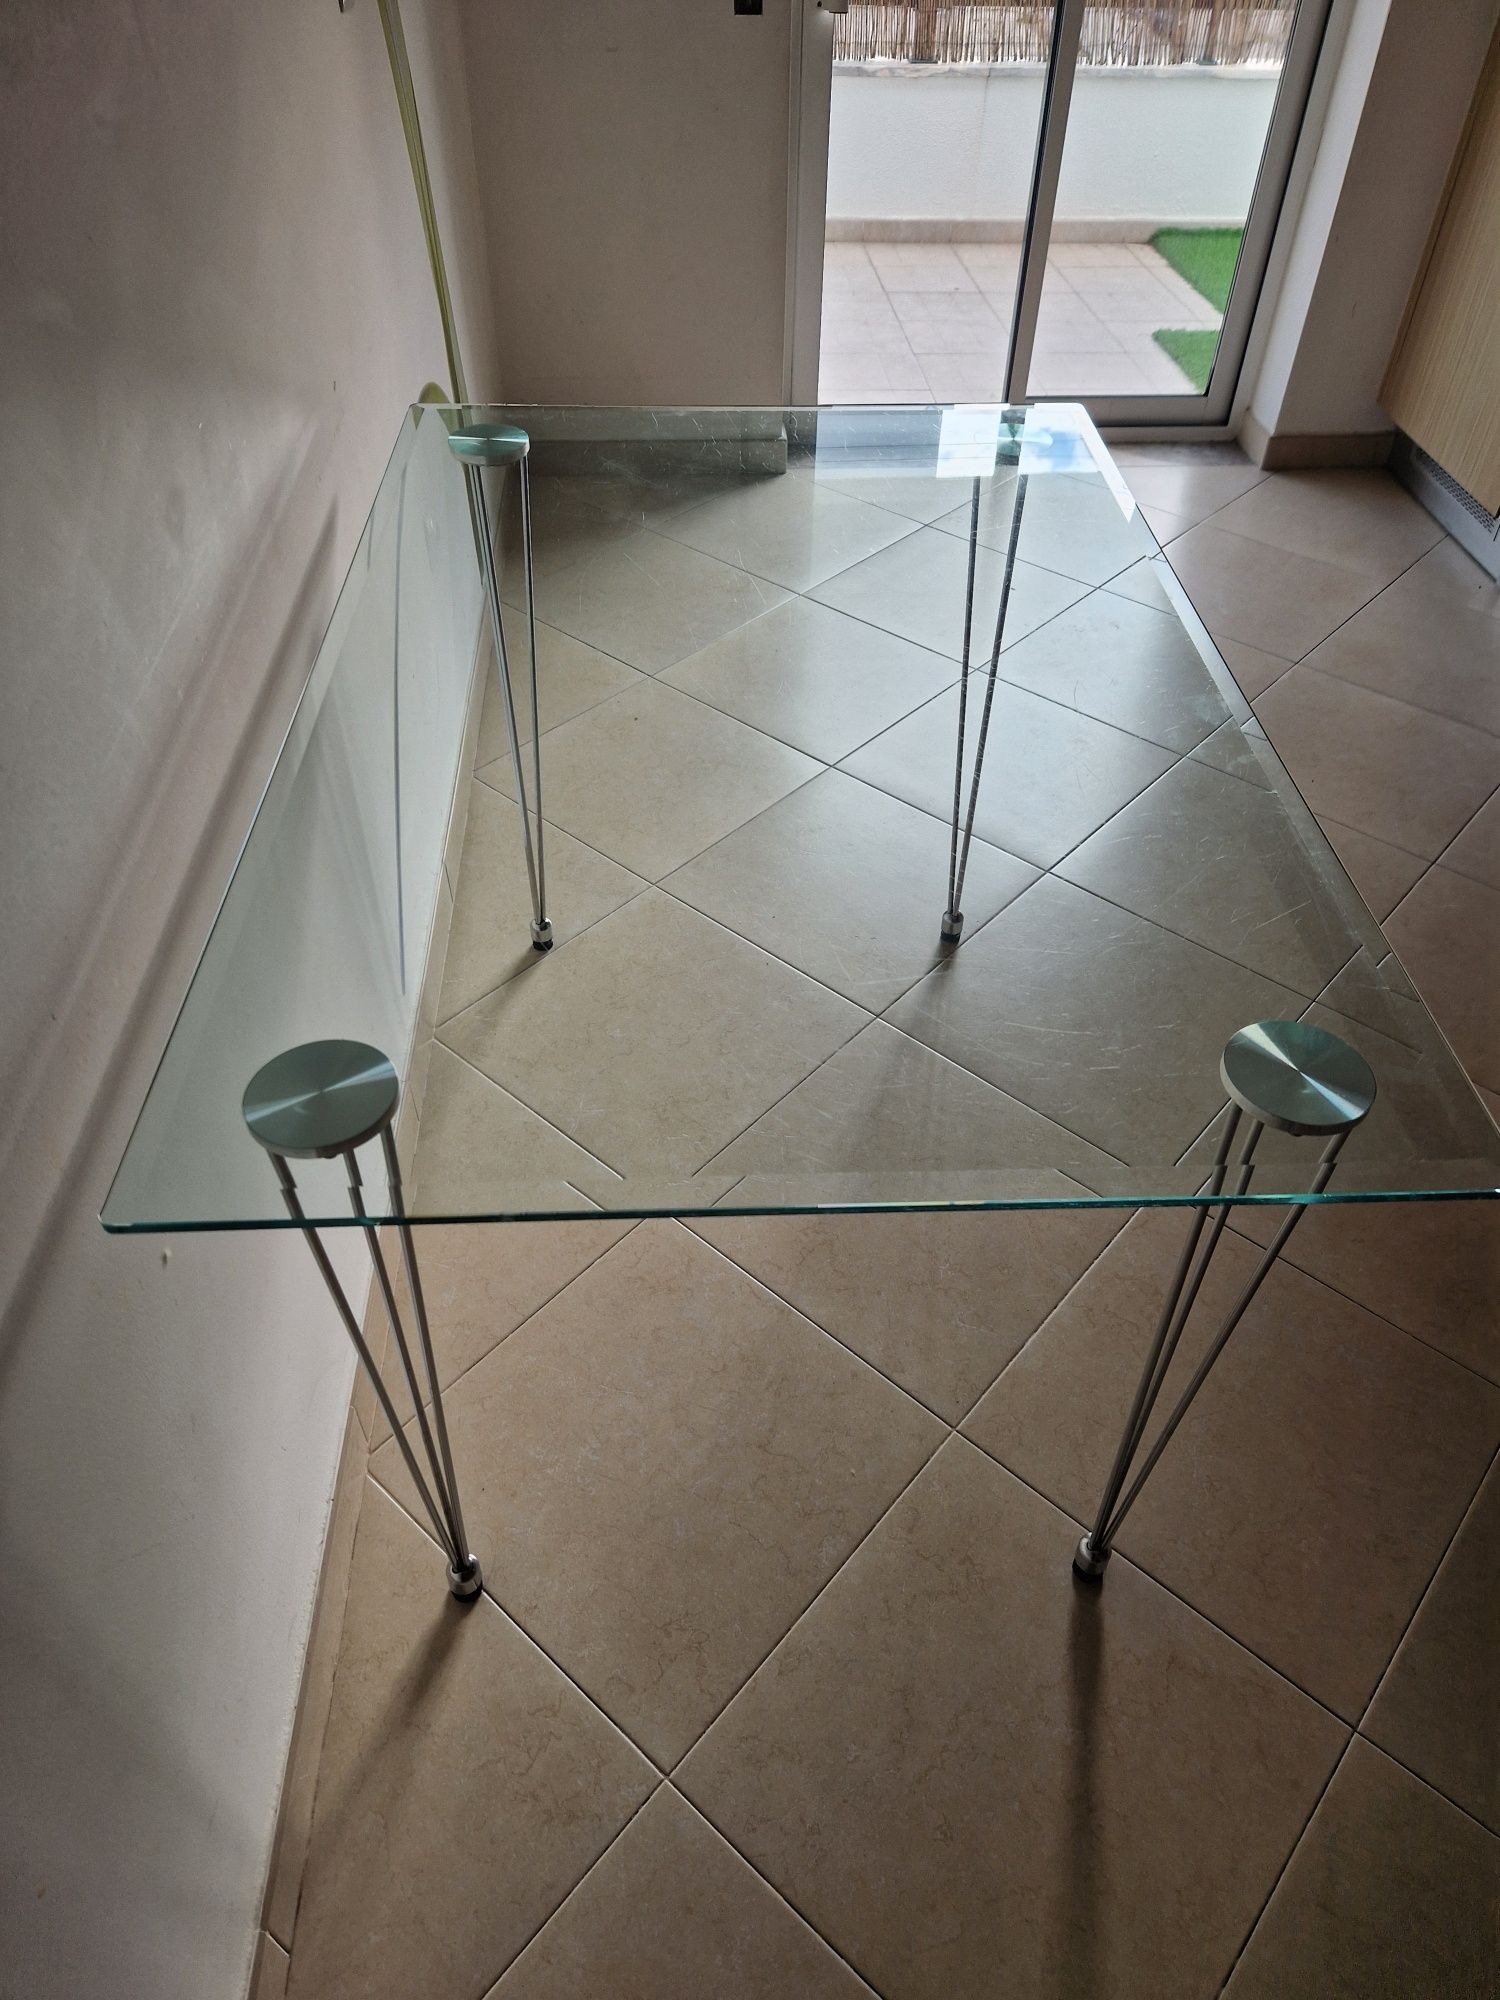 Mesa de cozinha em vidro.